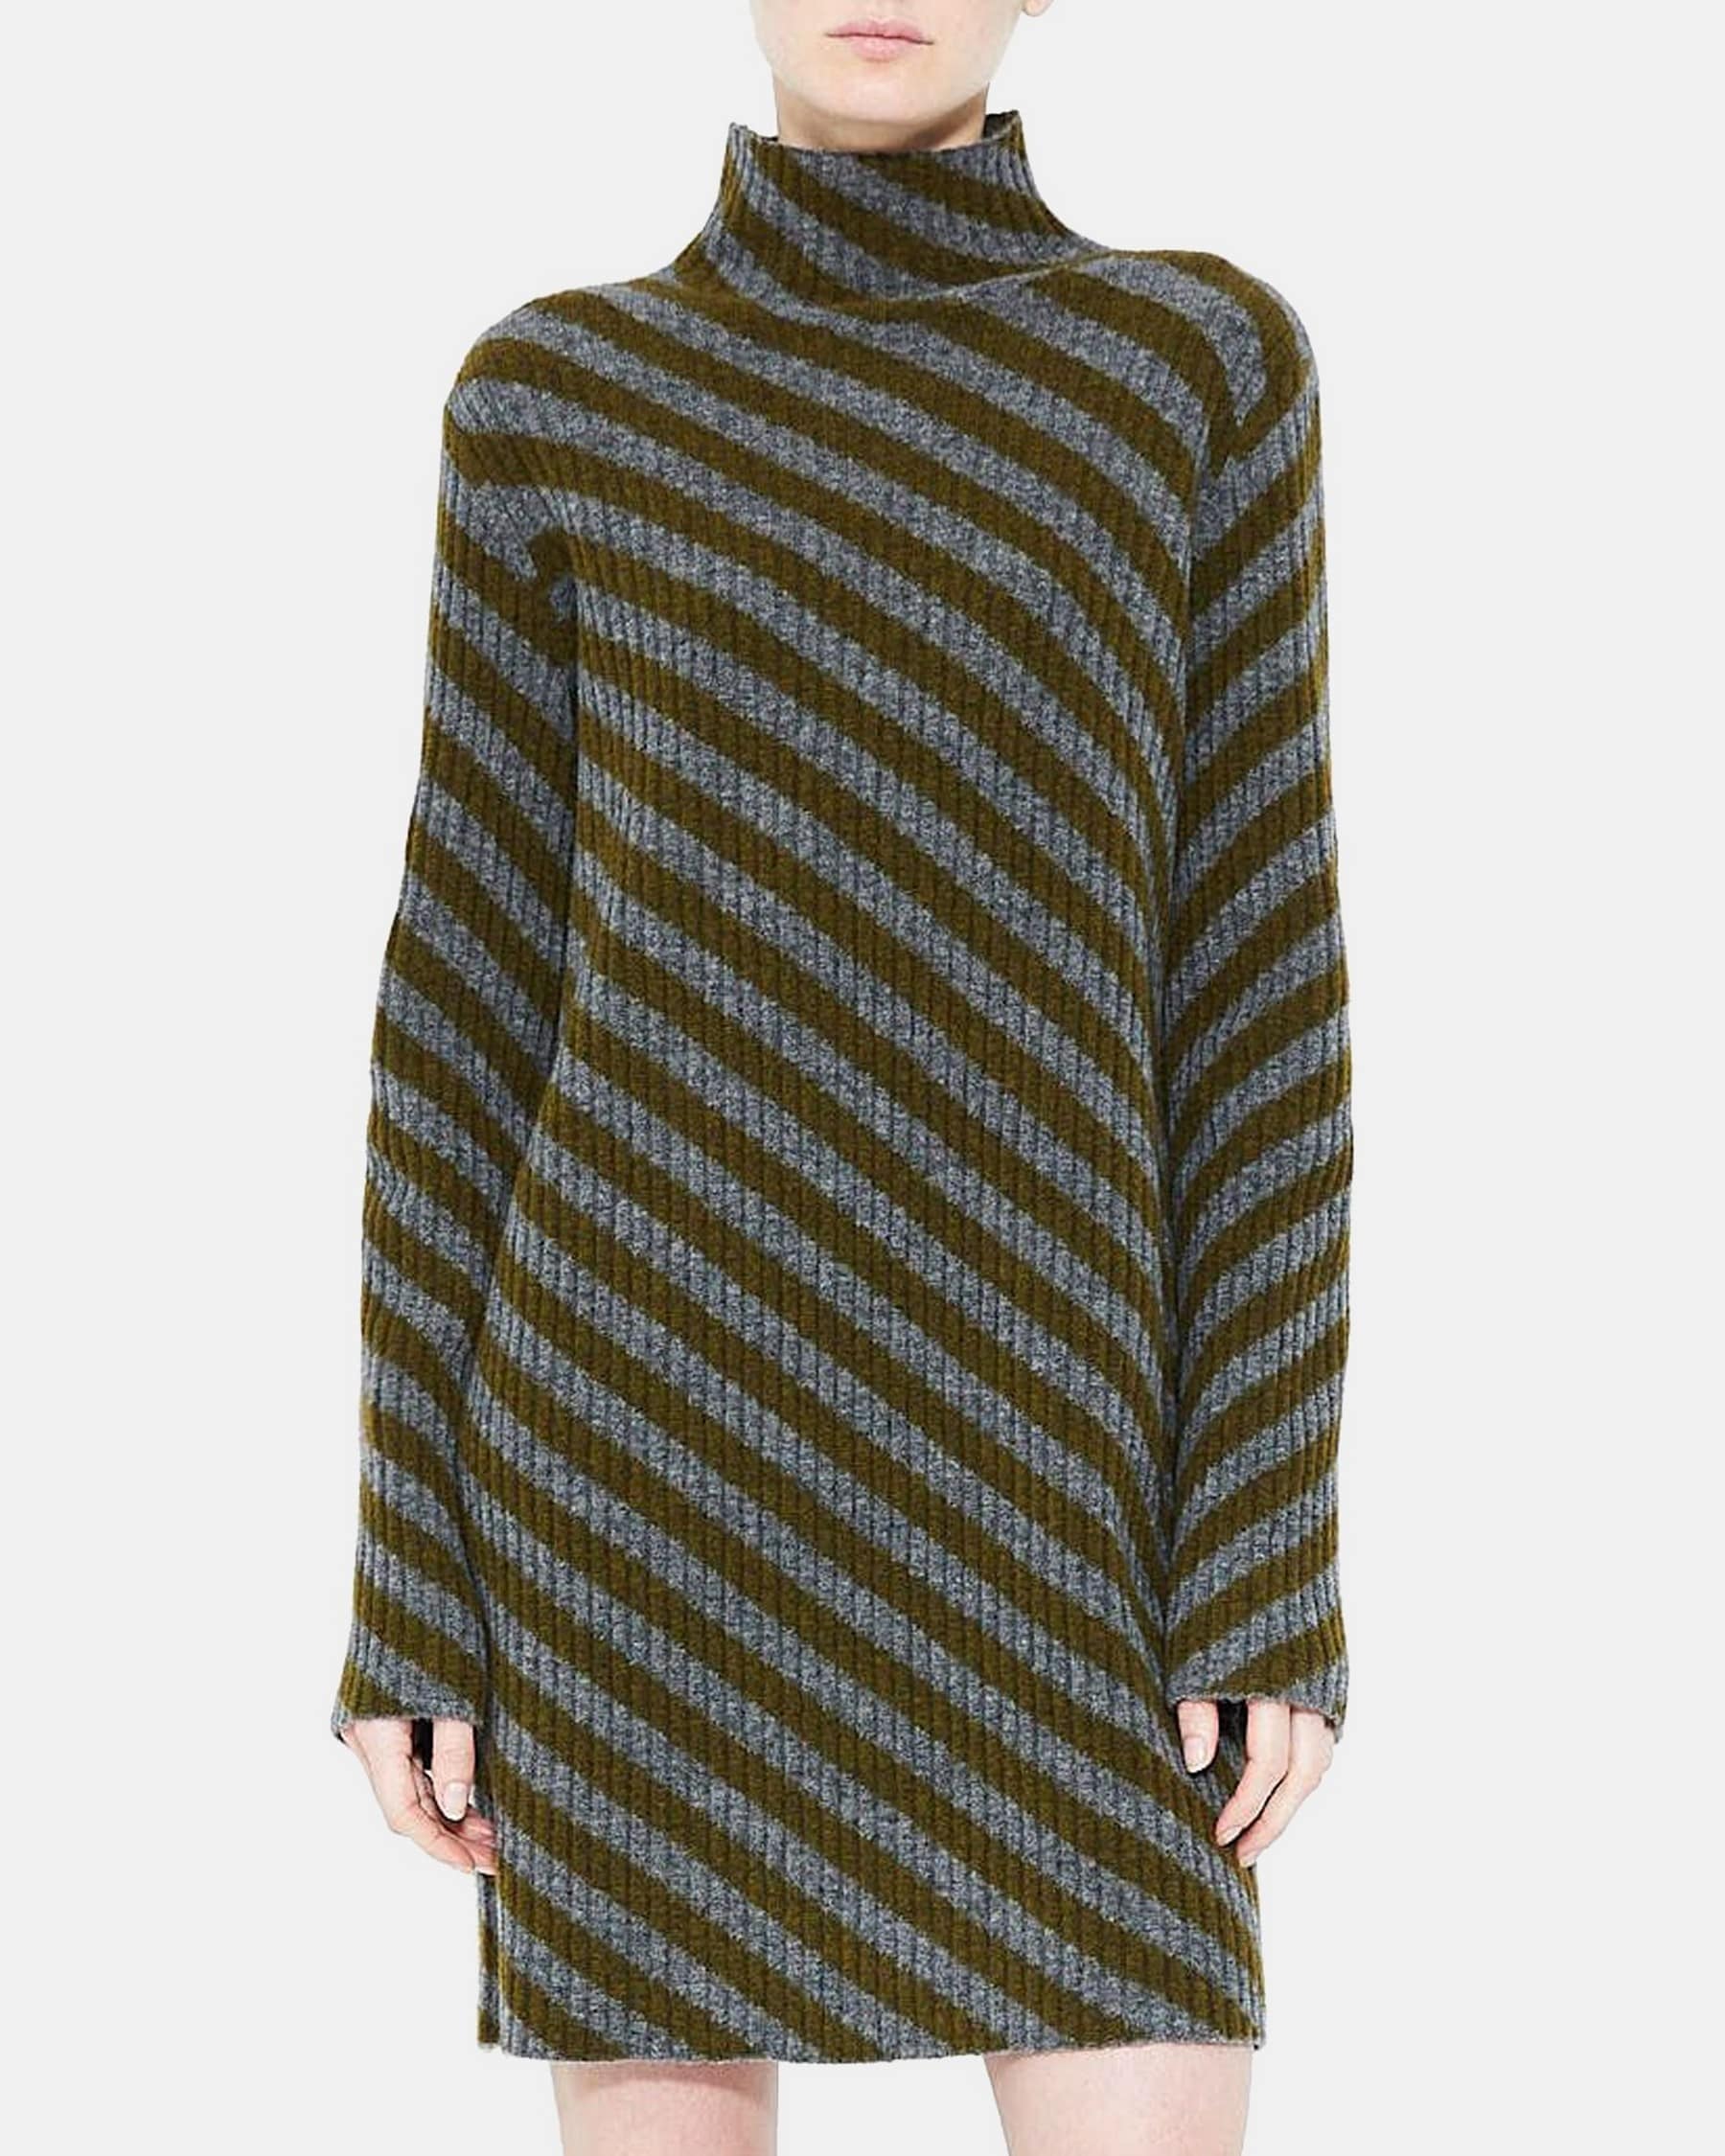 Turtleneck Dress in Striped Wool Blend